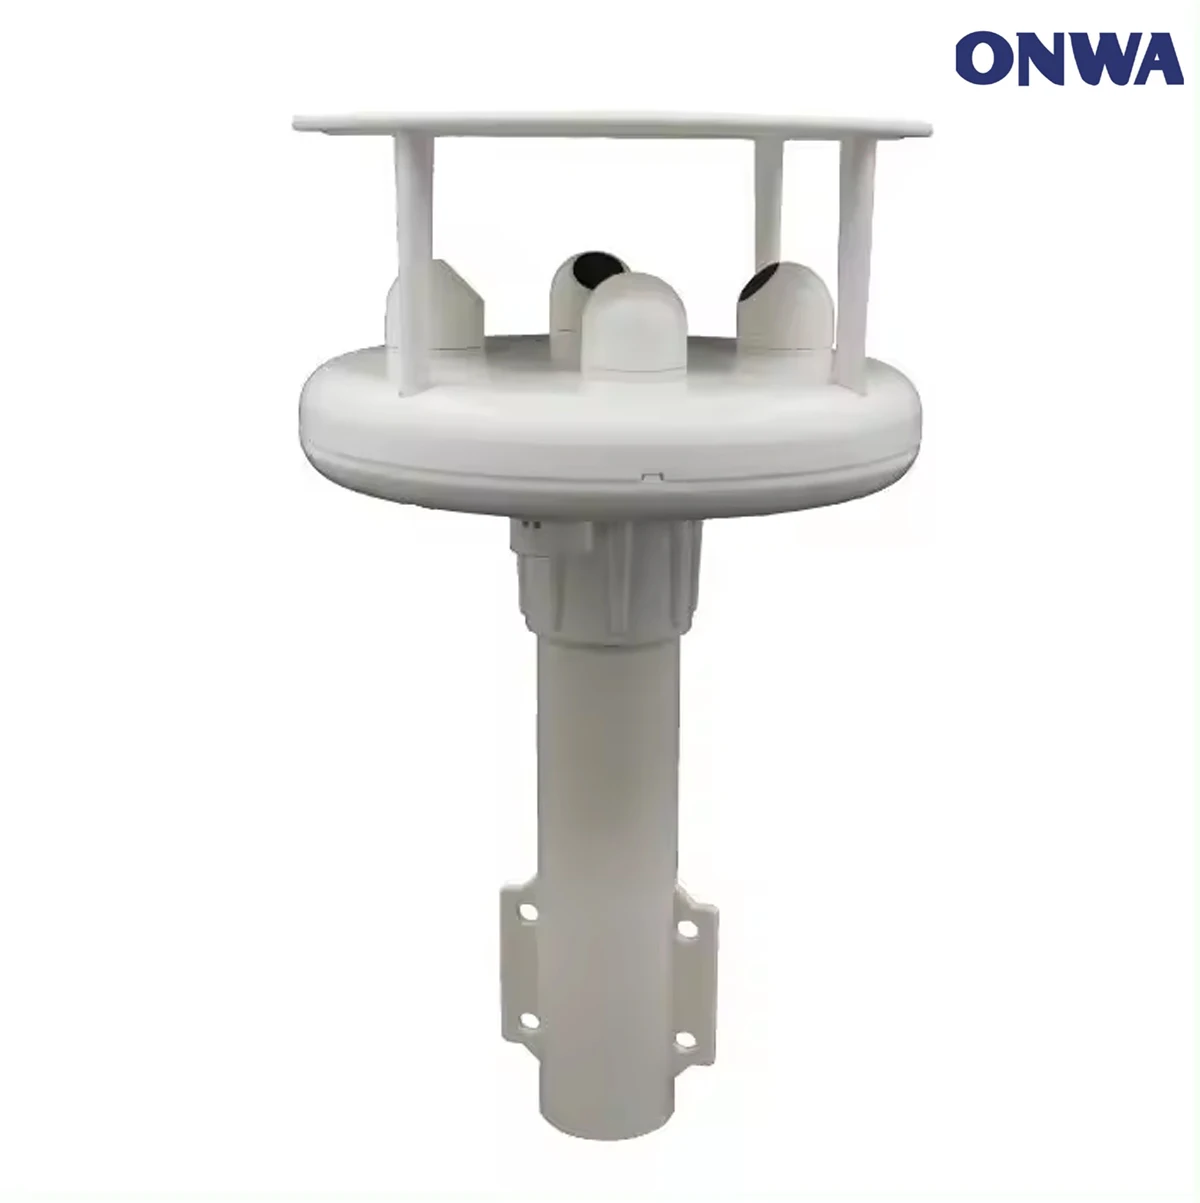 

ONWA KW-360 Ultrasonic Anemometer/ wind sensor